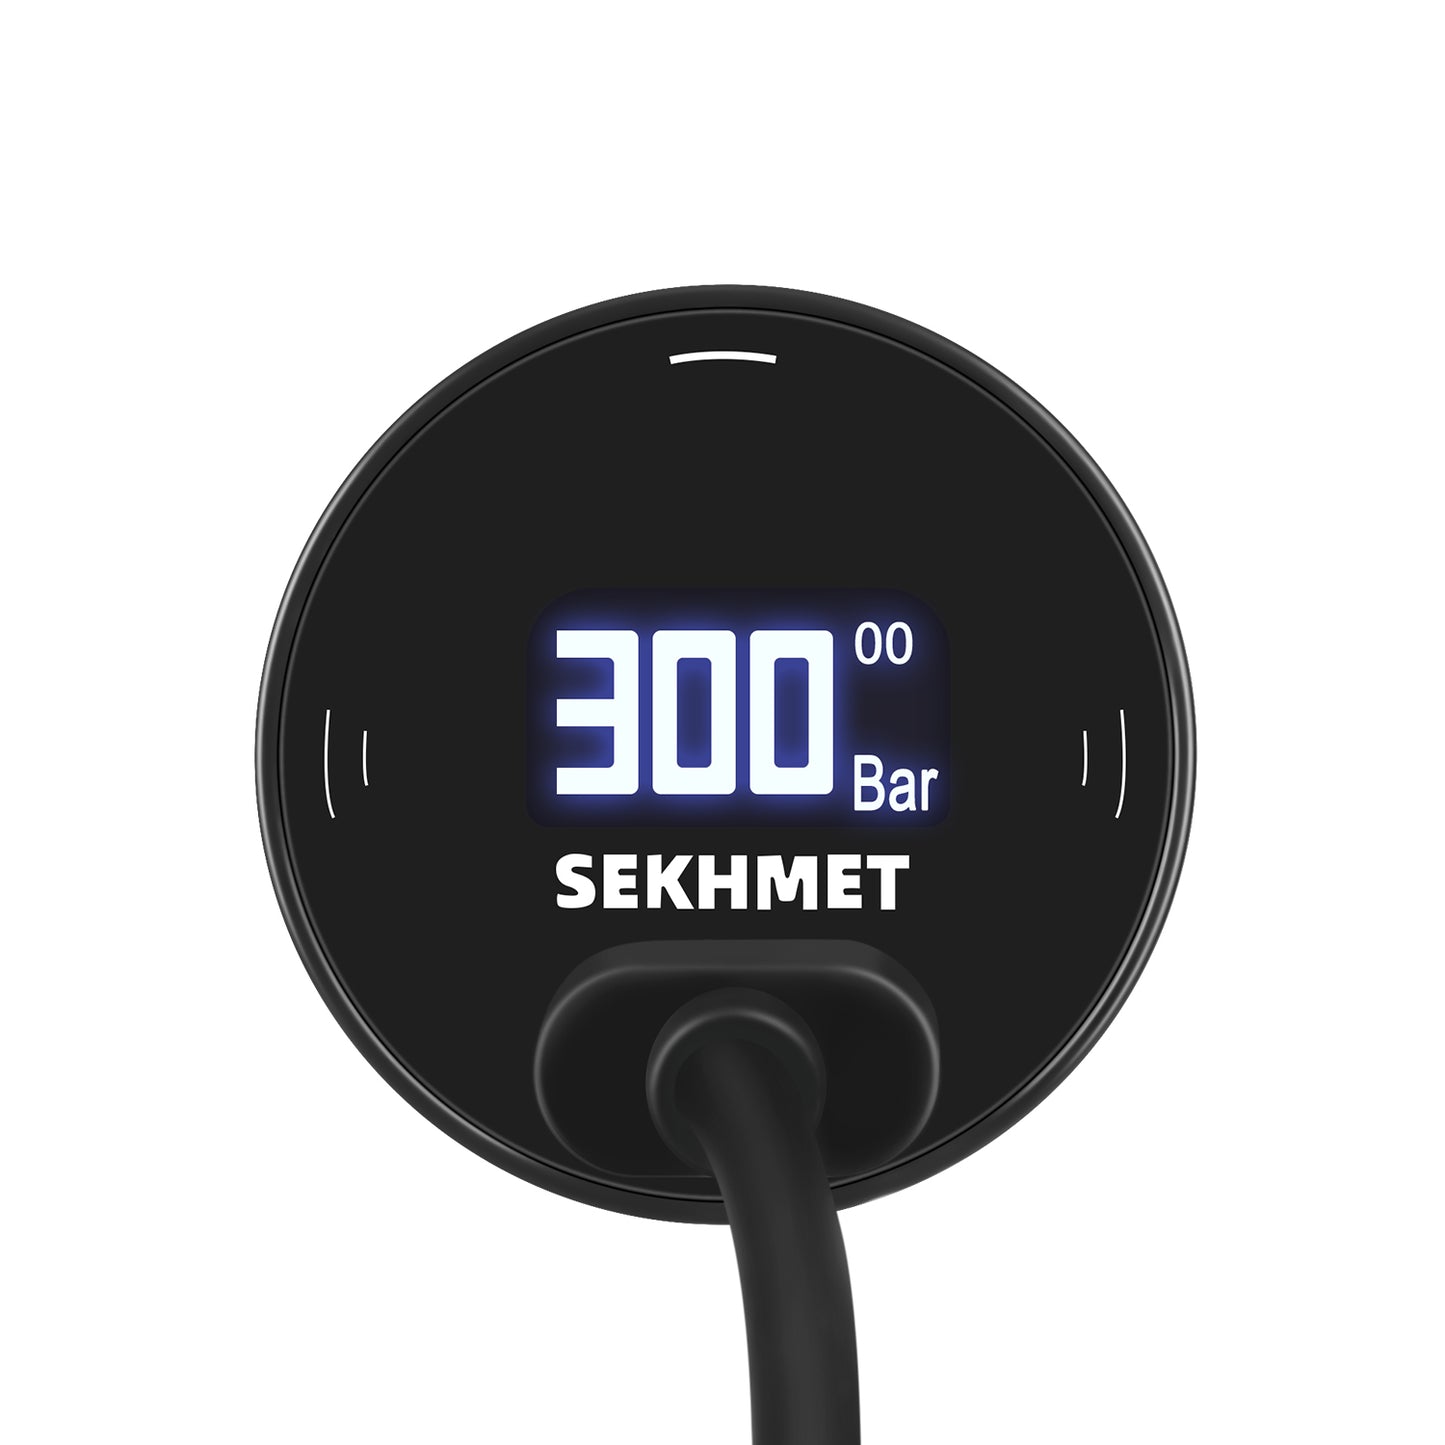 Sekhmet SmartGauge 28mm Pro Digital Pressure Gauge